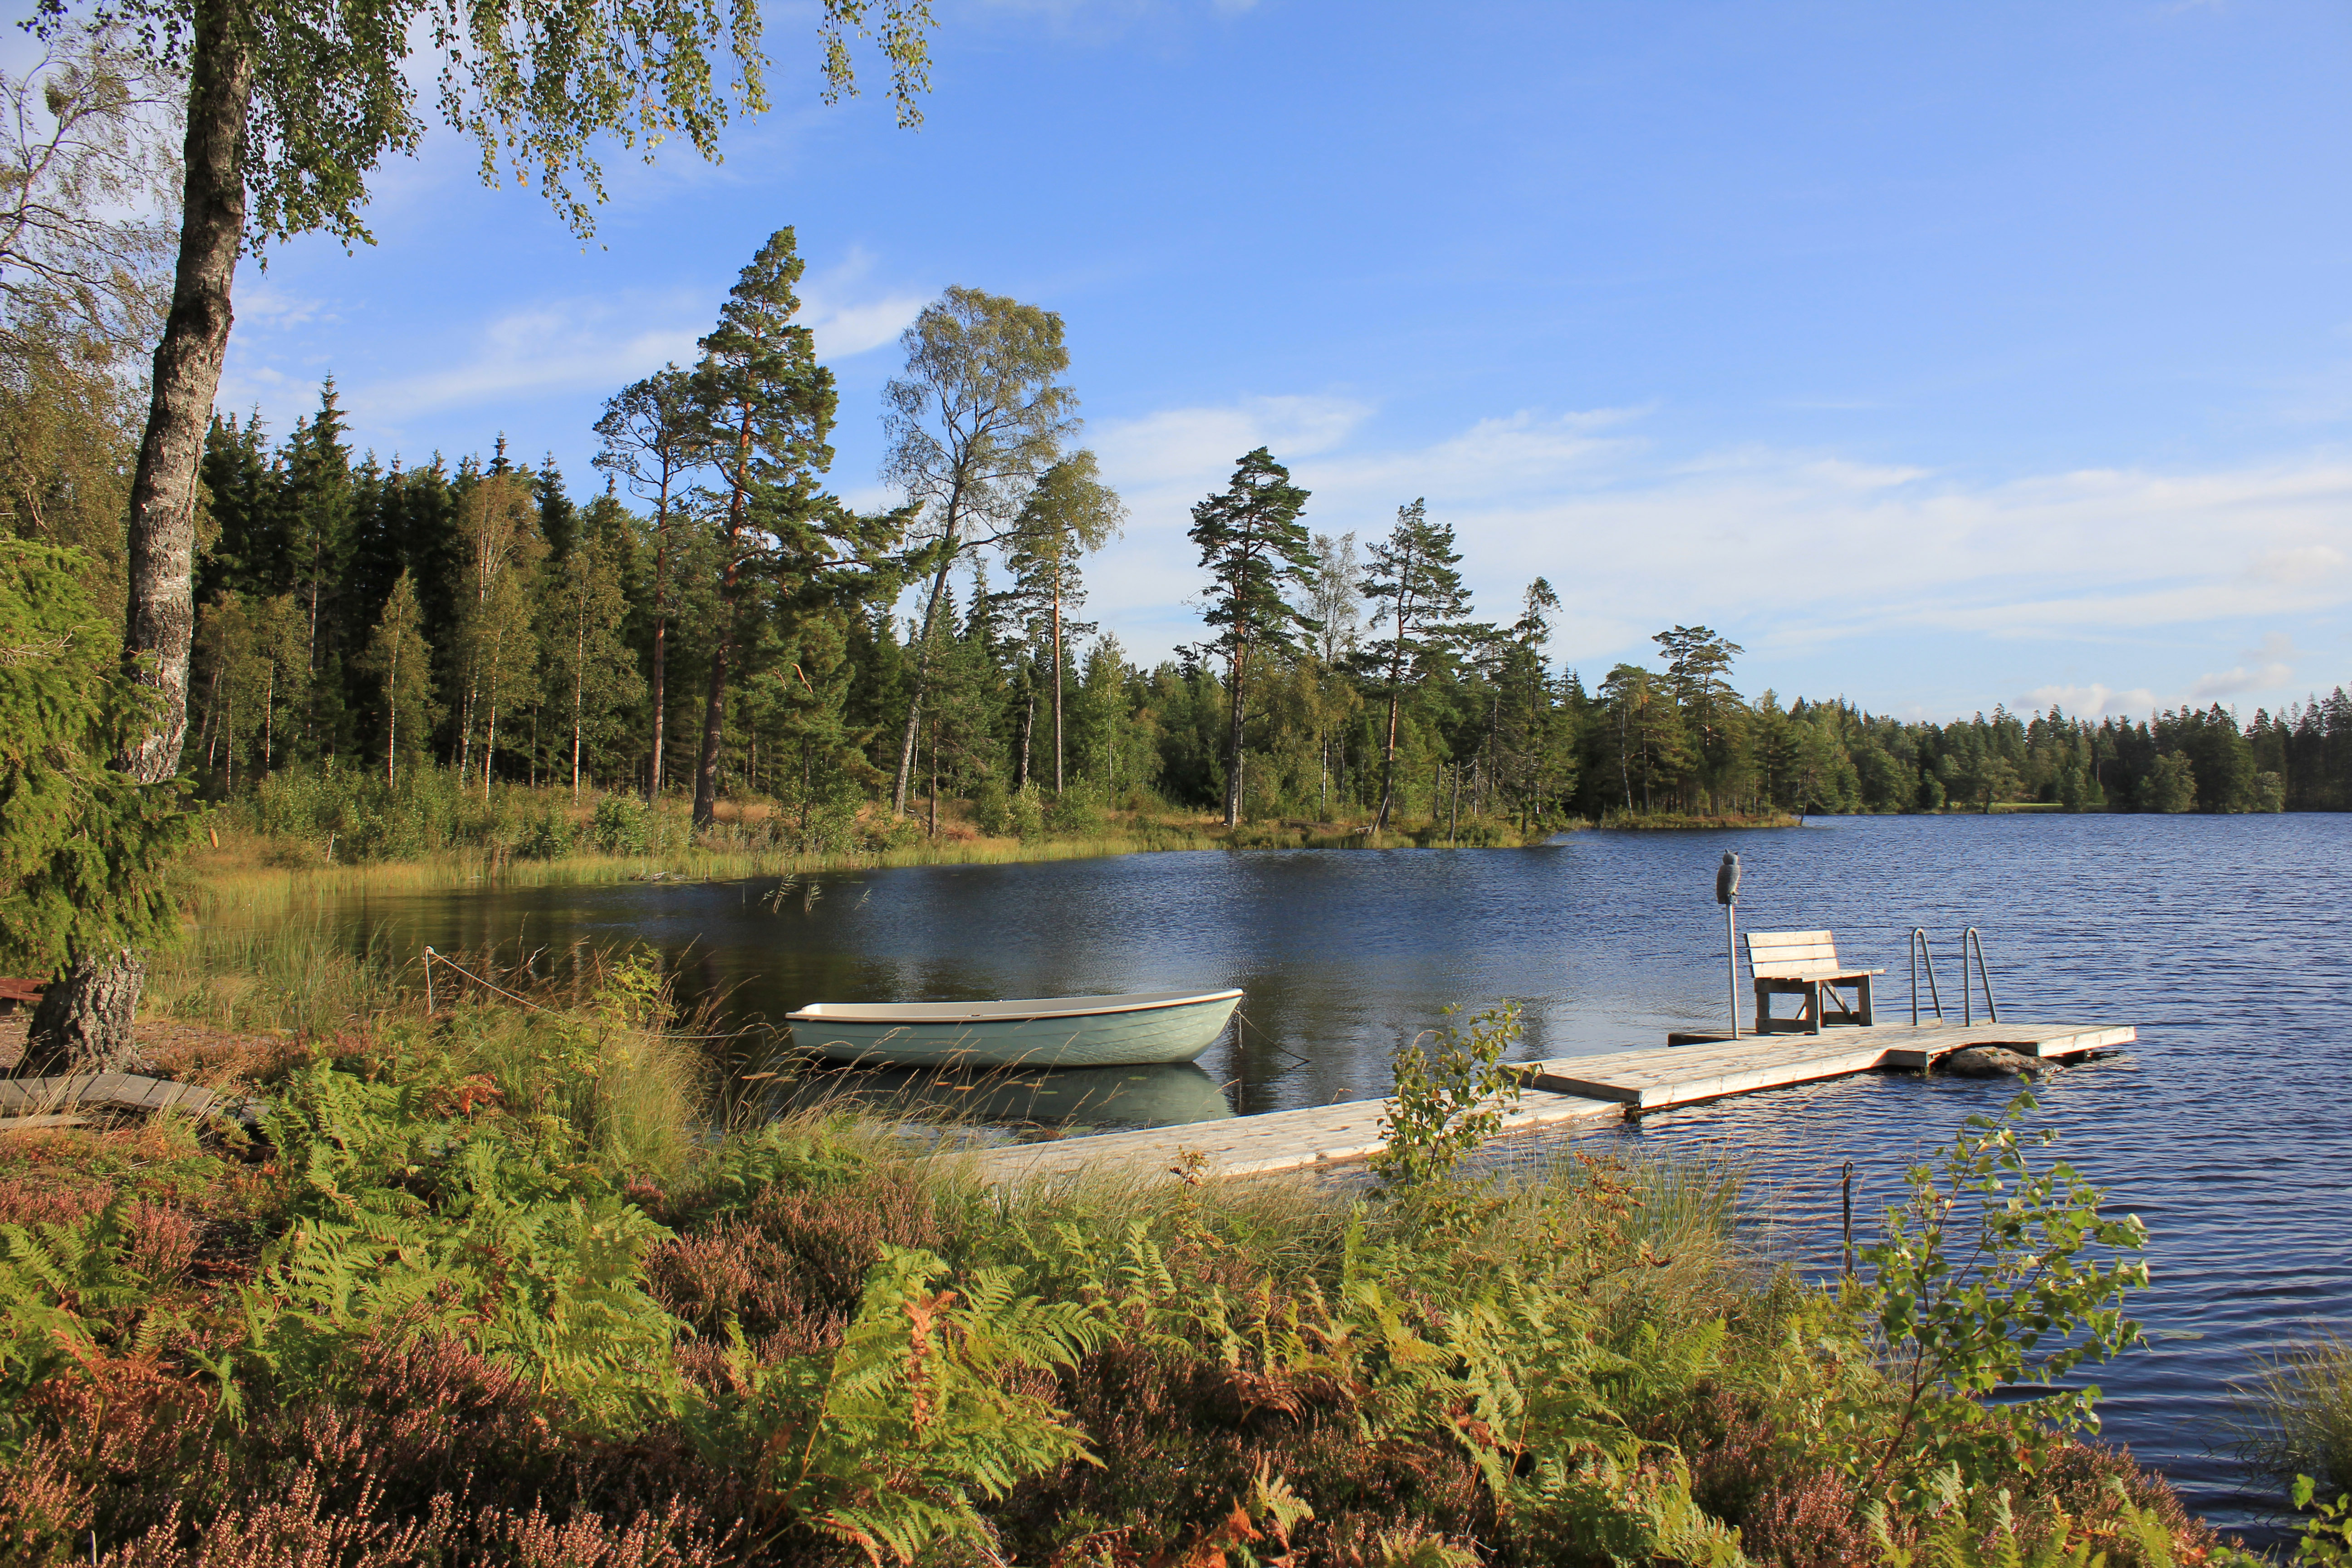 Vice væske utilsigtet hændelse Back to Nature: How to Spend a Week in Sweden